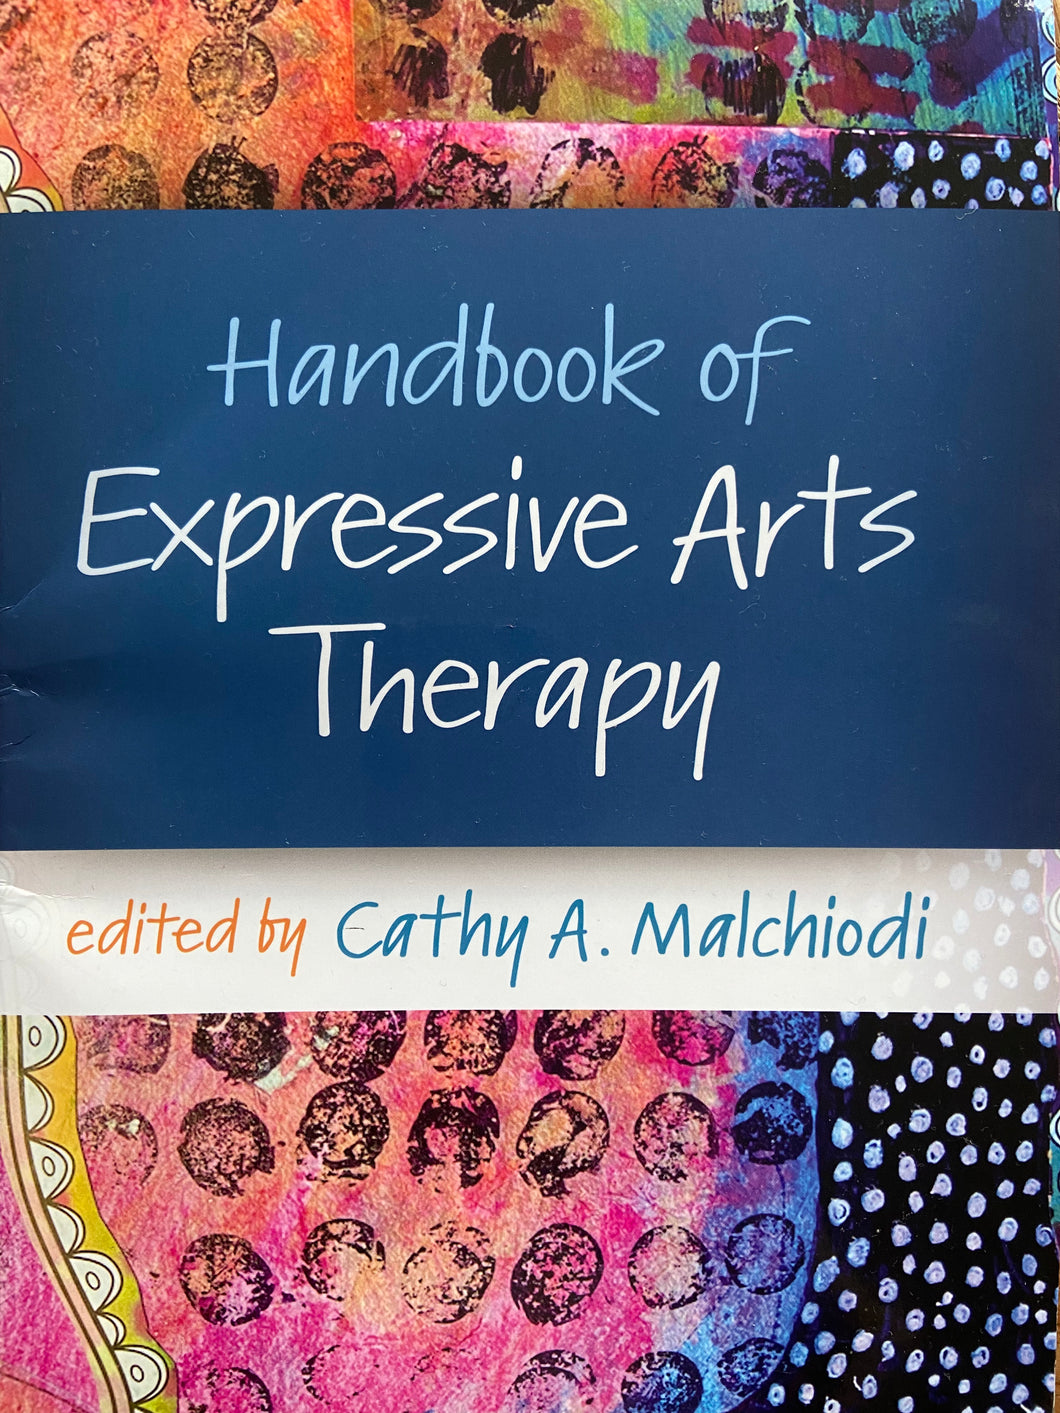 <tc>Handbook of Expressive Art Therapy - kan købes hos Guilford Press and mange større boghandlere</tc>